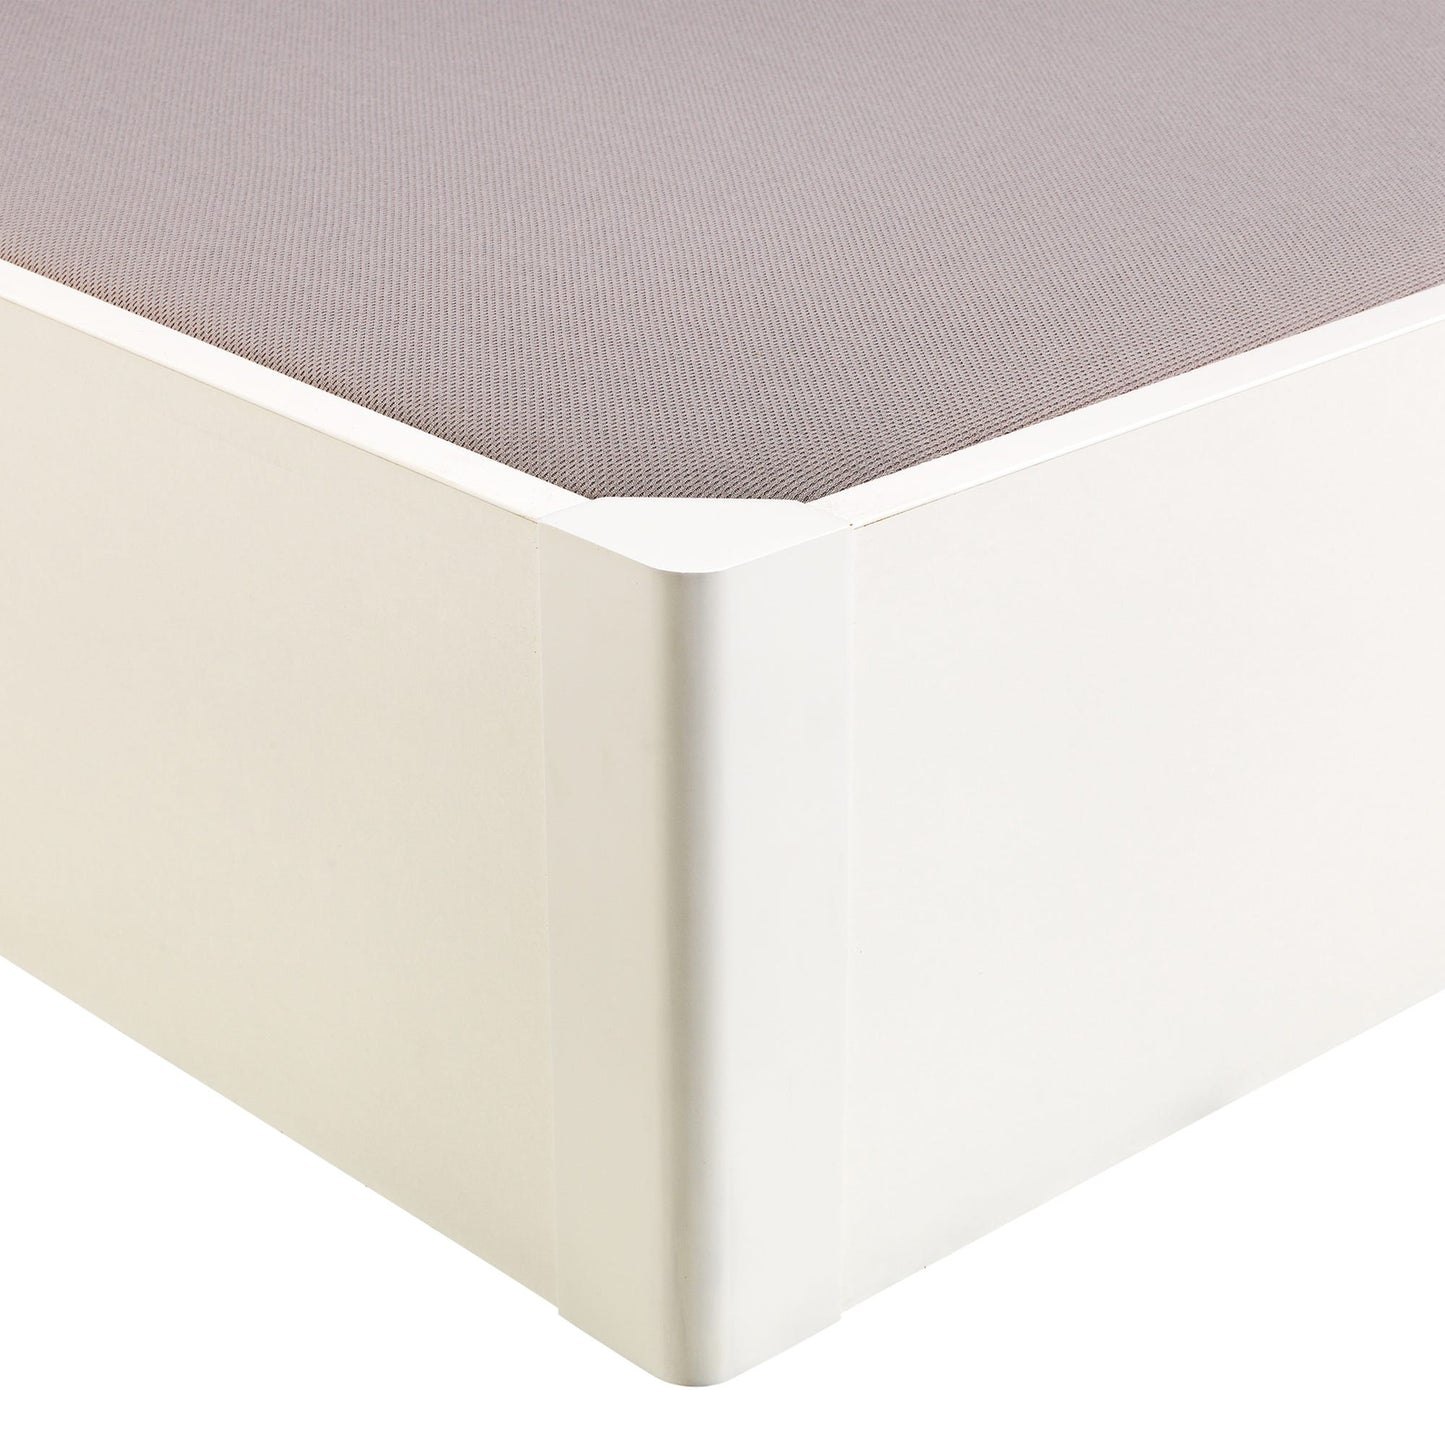 Canapé abatible de madera tapa única de color blanco - DESIGN - 135x190